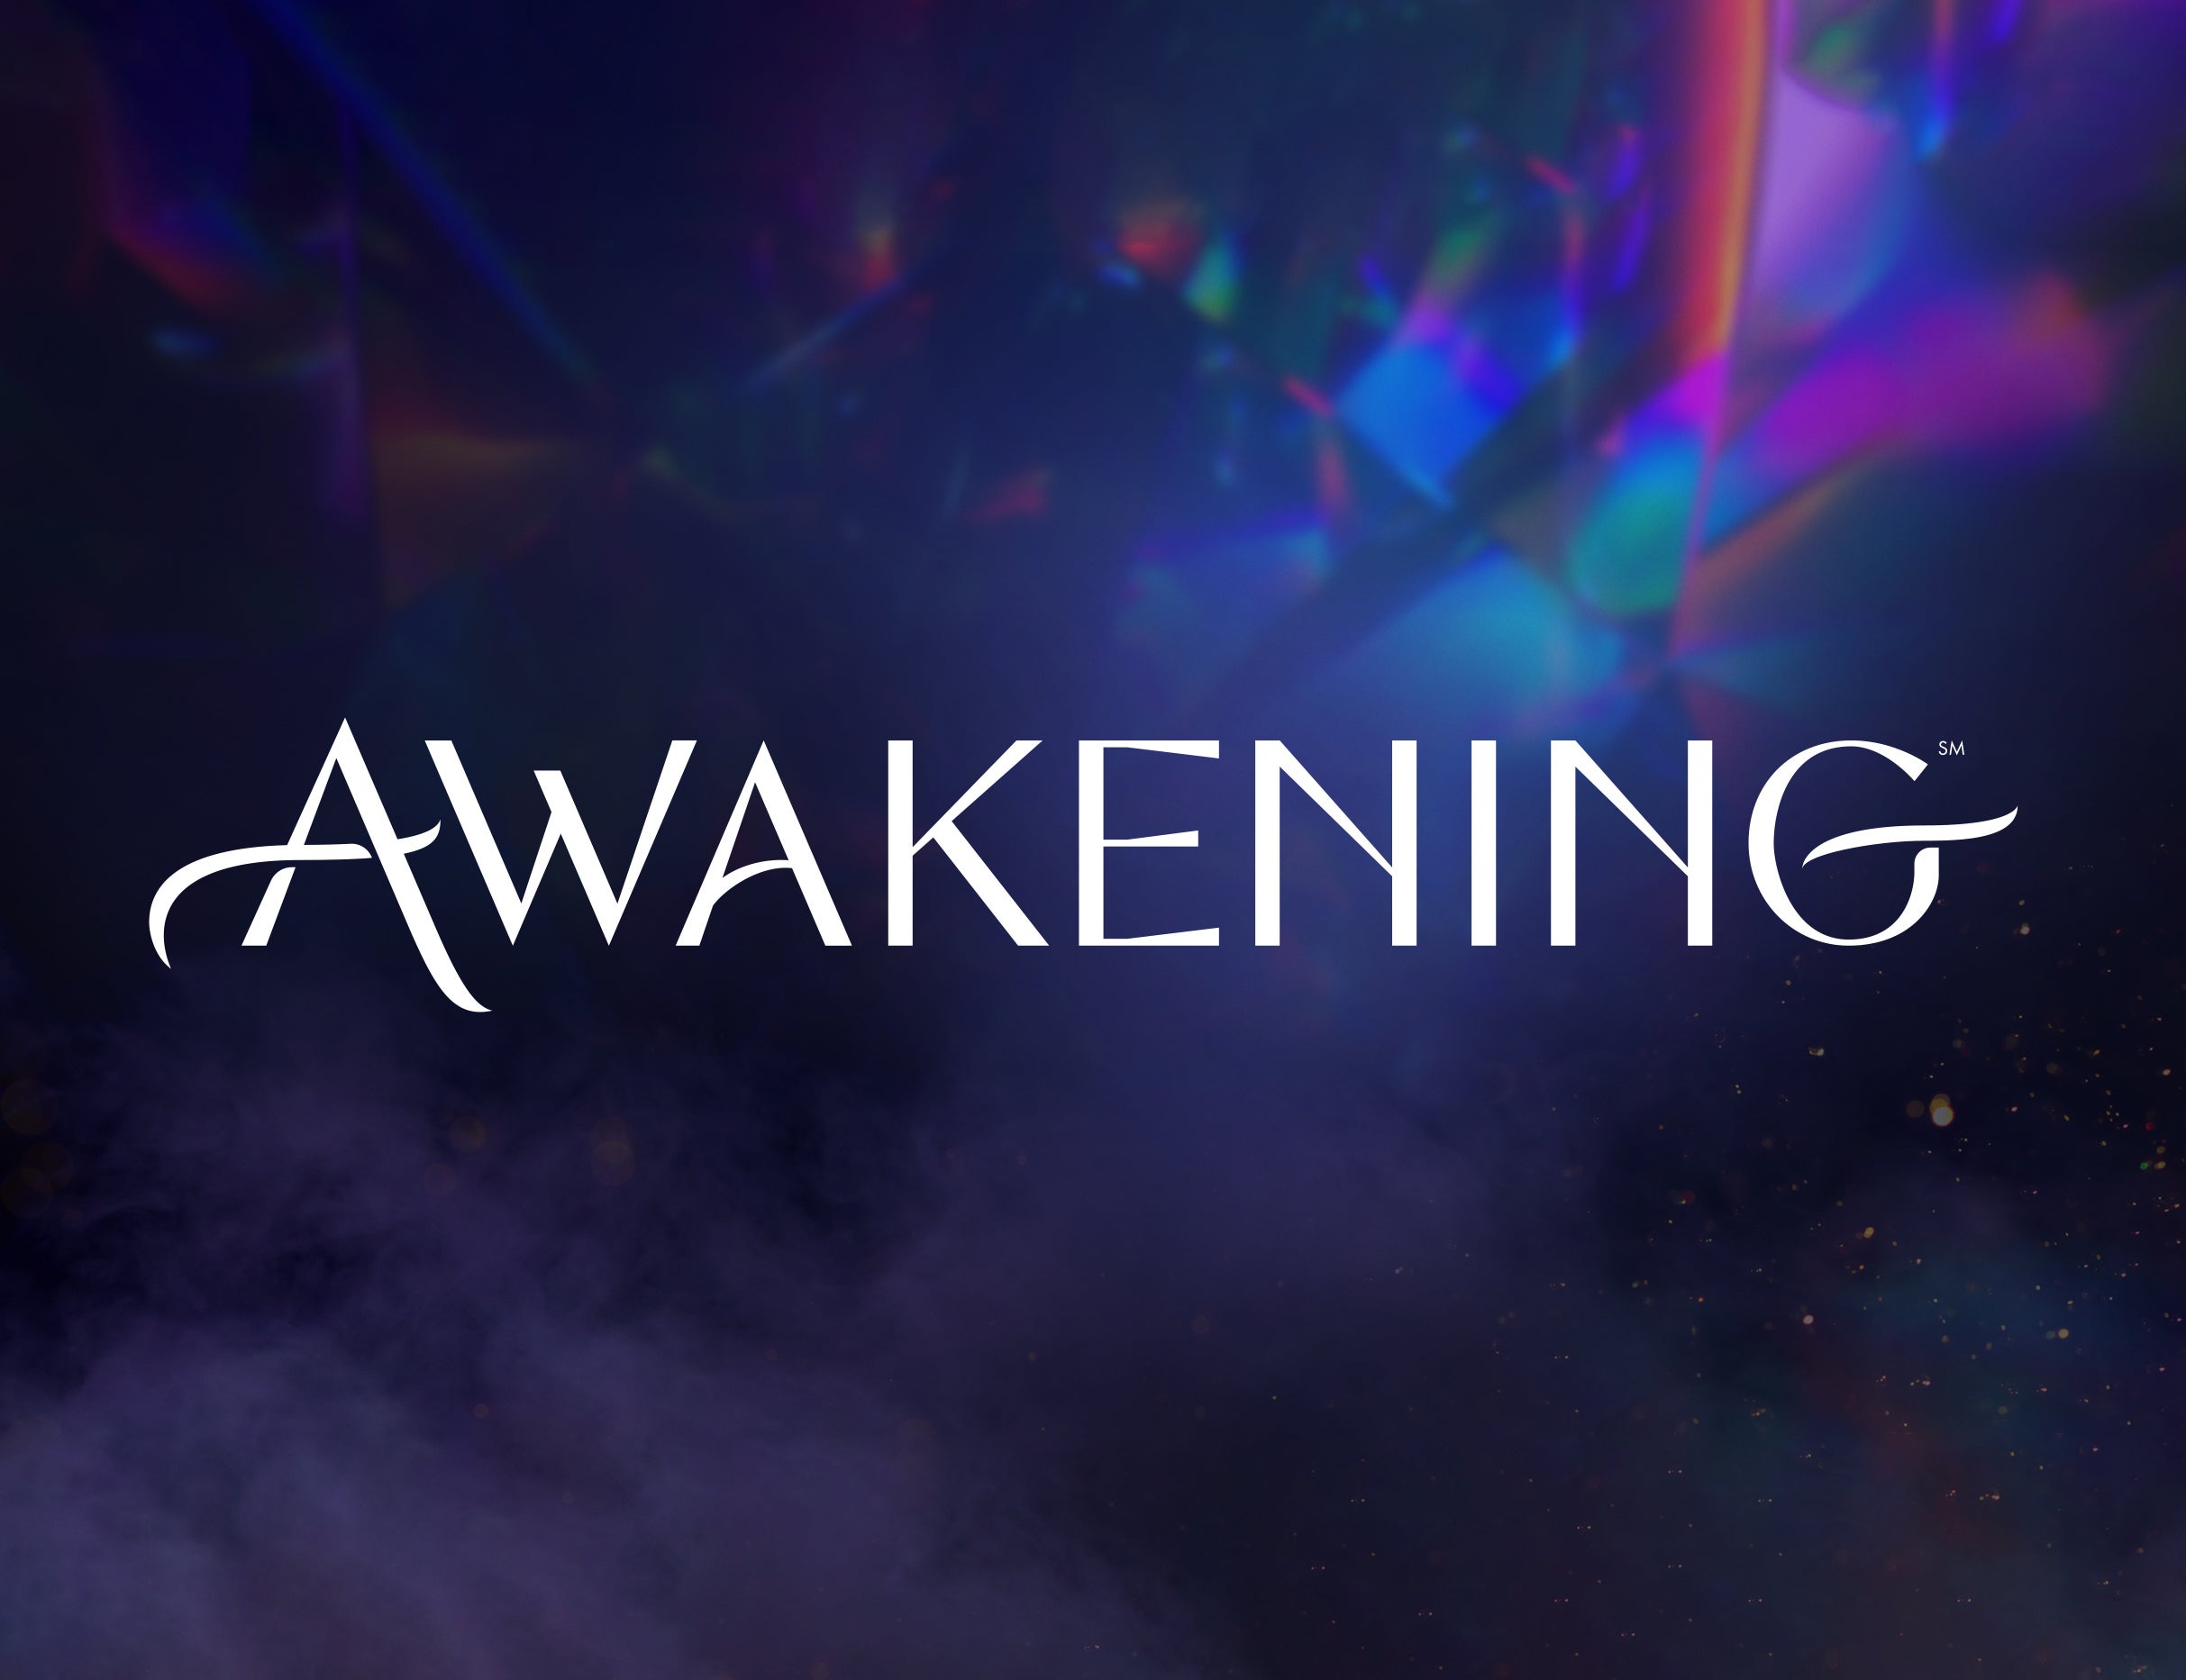 Awakening at Awakening Theater at Wynn Las Vegas